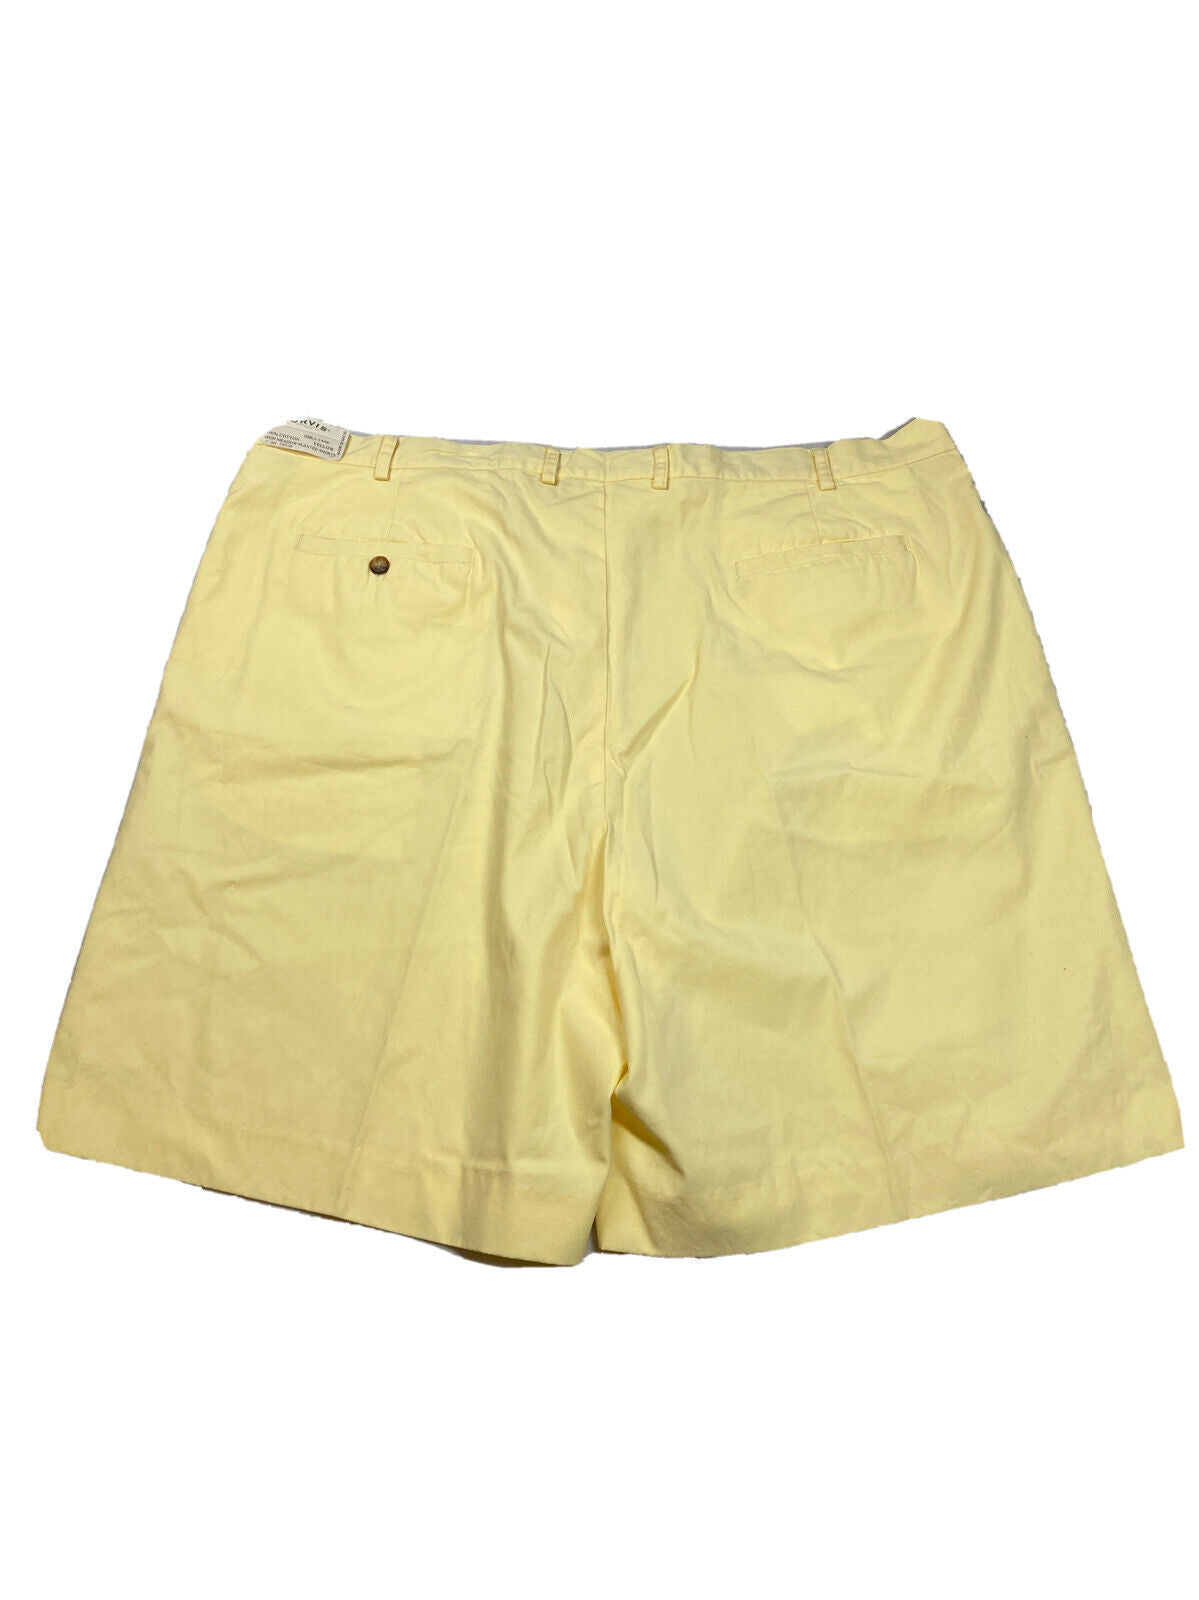 NUEVOS pantalones cortos chapados en popelina de elefante 100% algodón amarillo Orvis para hombre - 46